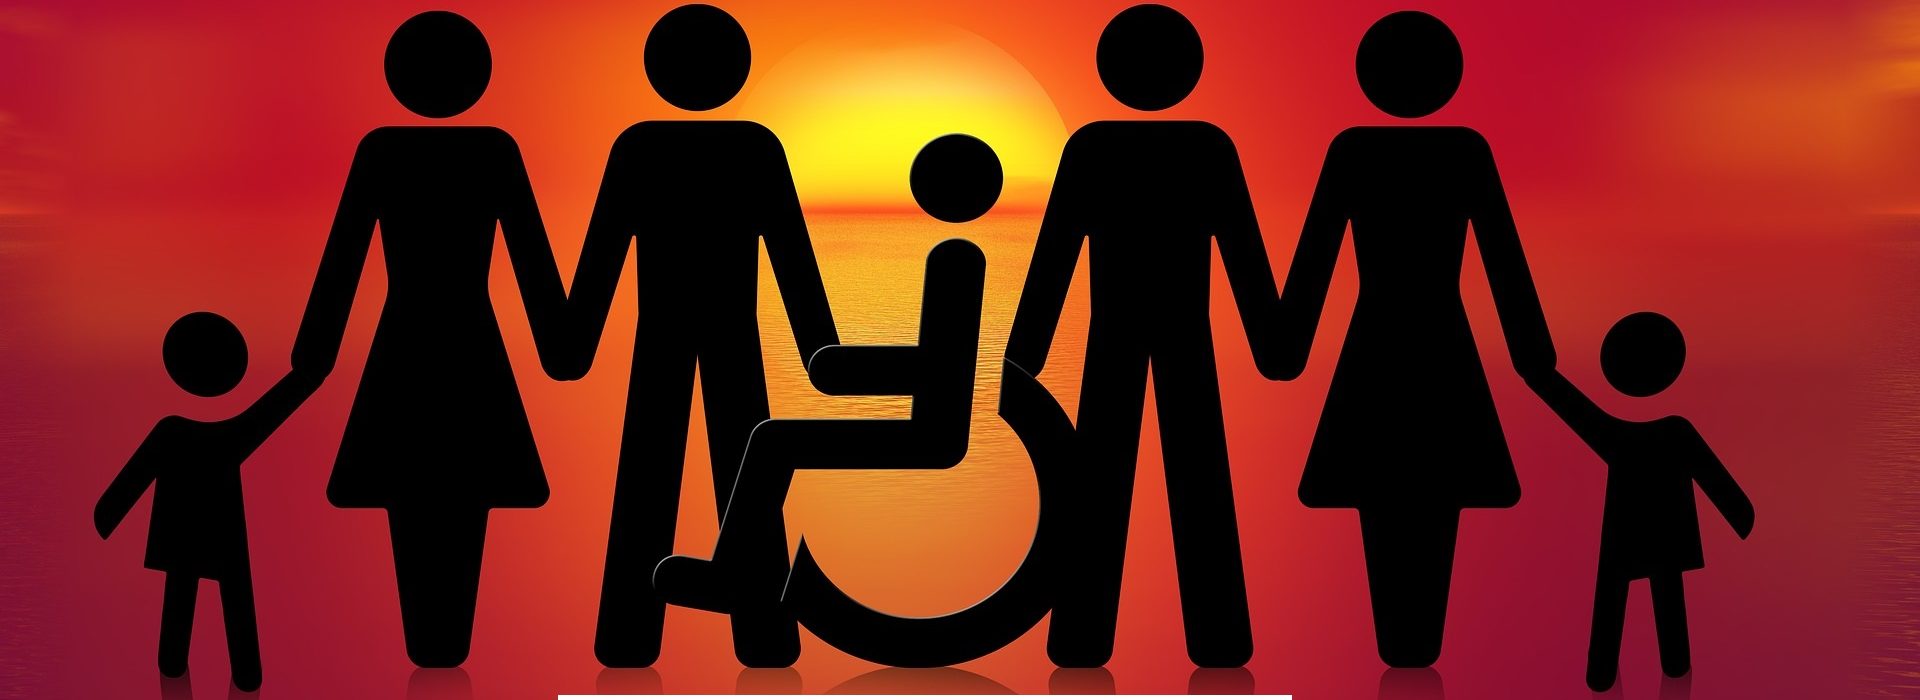 Día Internacional de las Personas con Discapacidad, 3 de diciembre